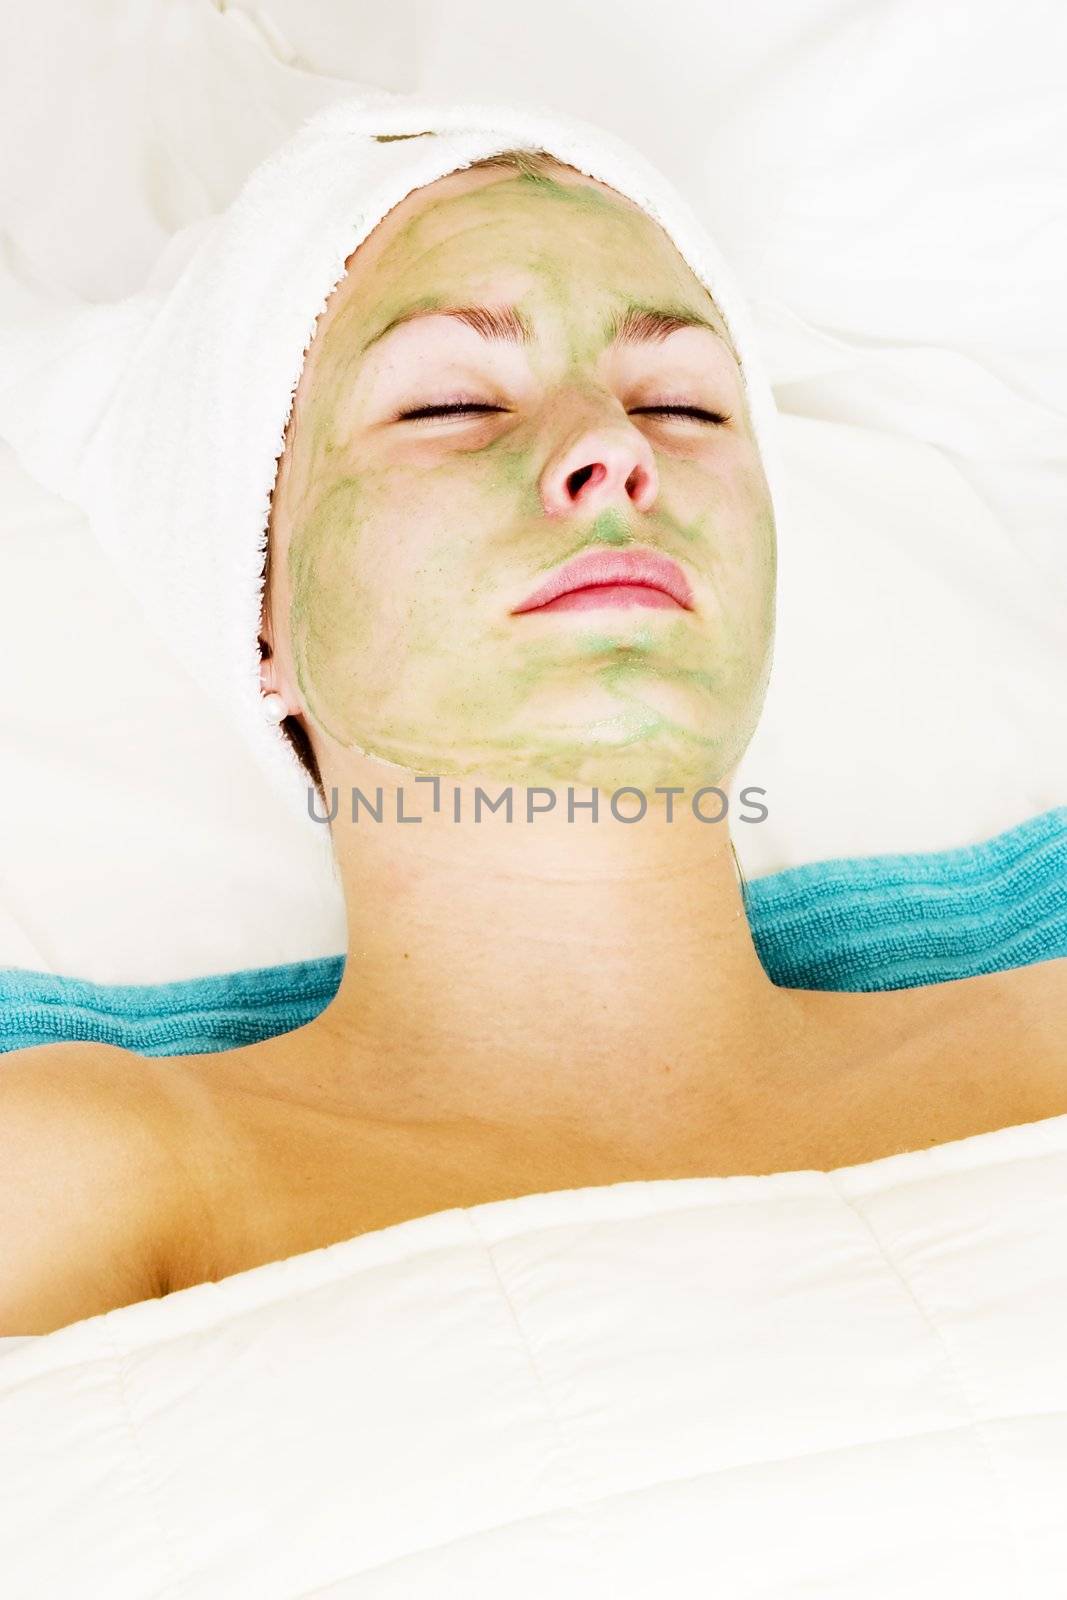 Aloe Vera facial preparation at a beauty spa.